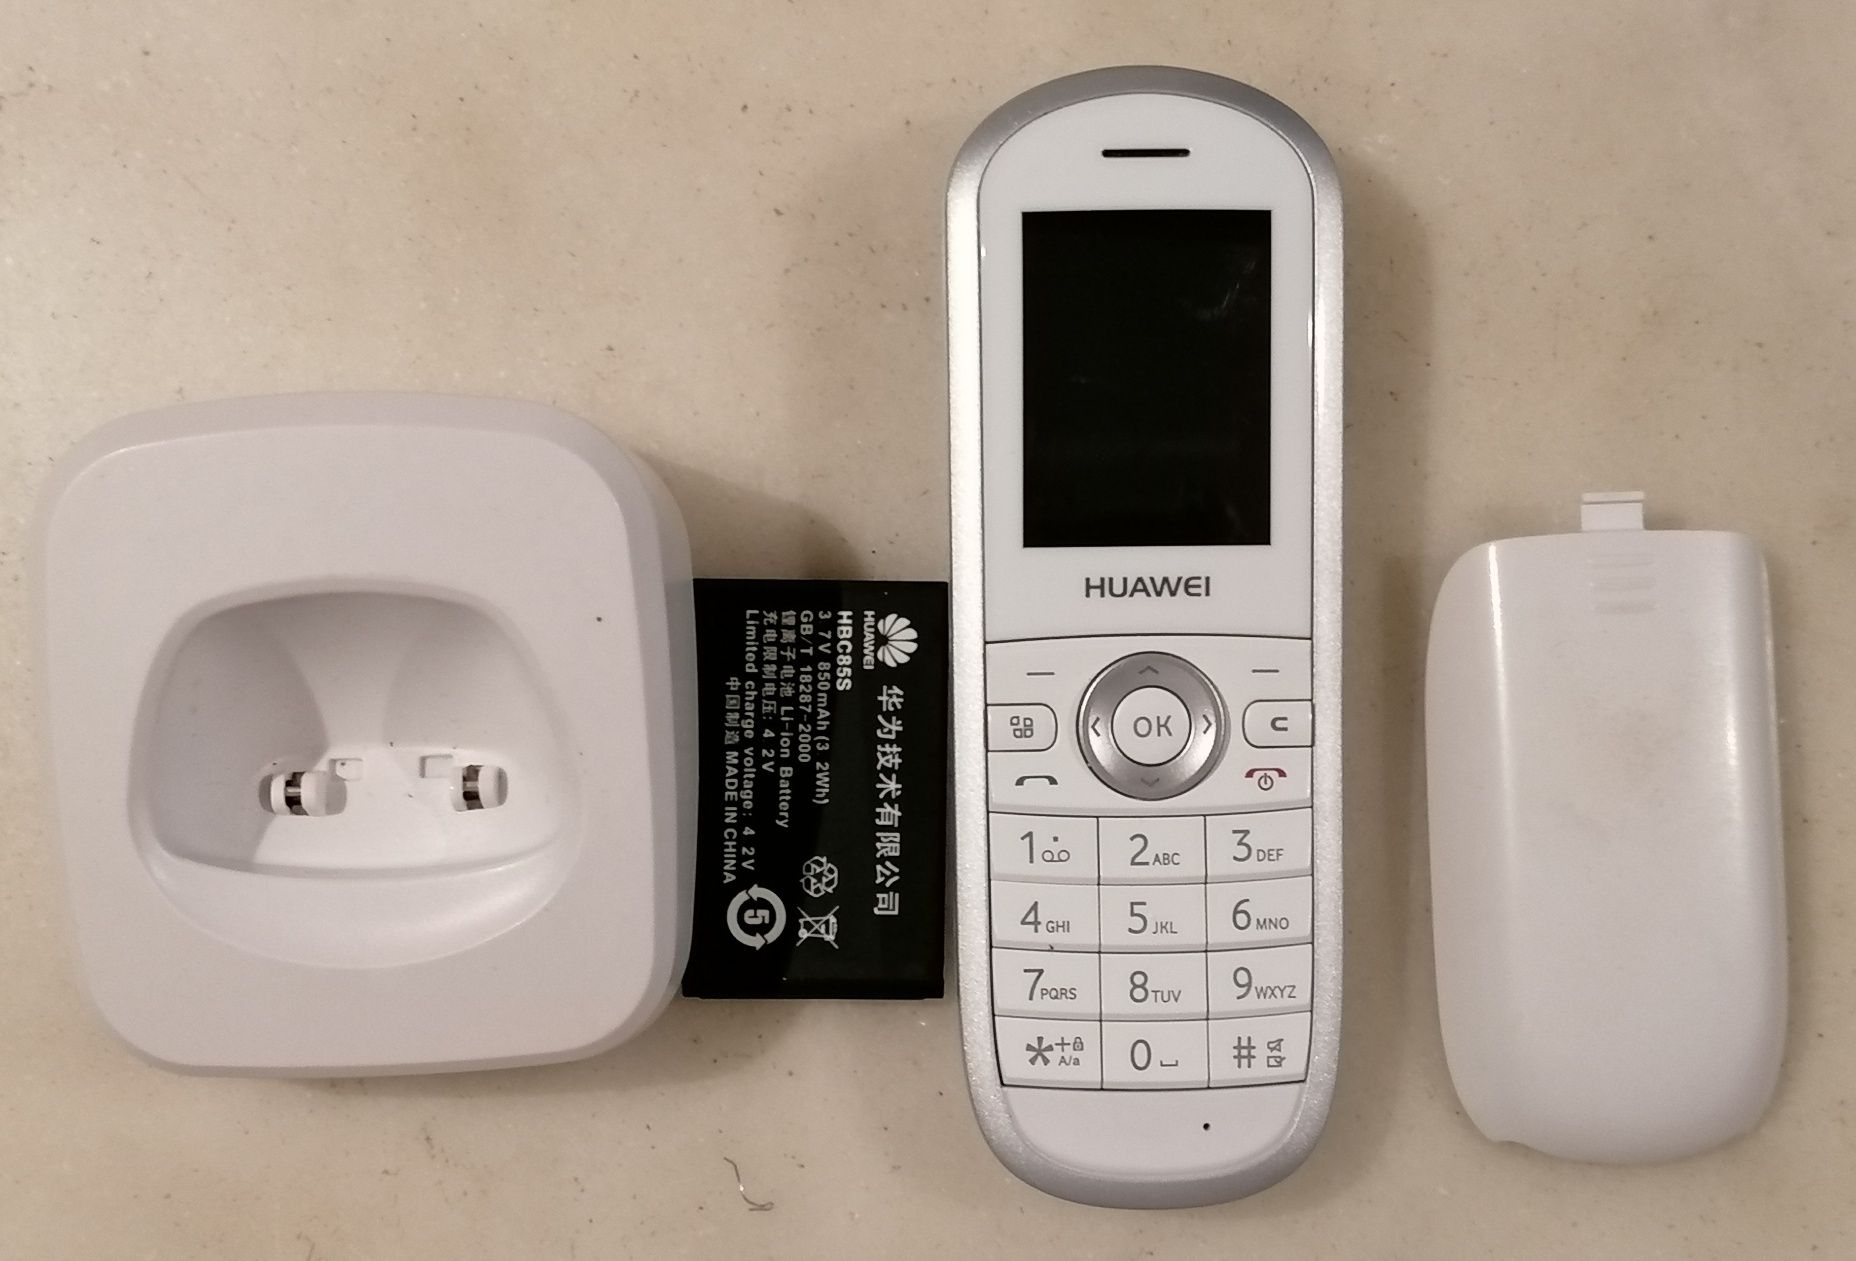 Telefones sem fios Vodafone Huawei em branco ou da NOS em preto